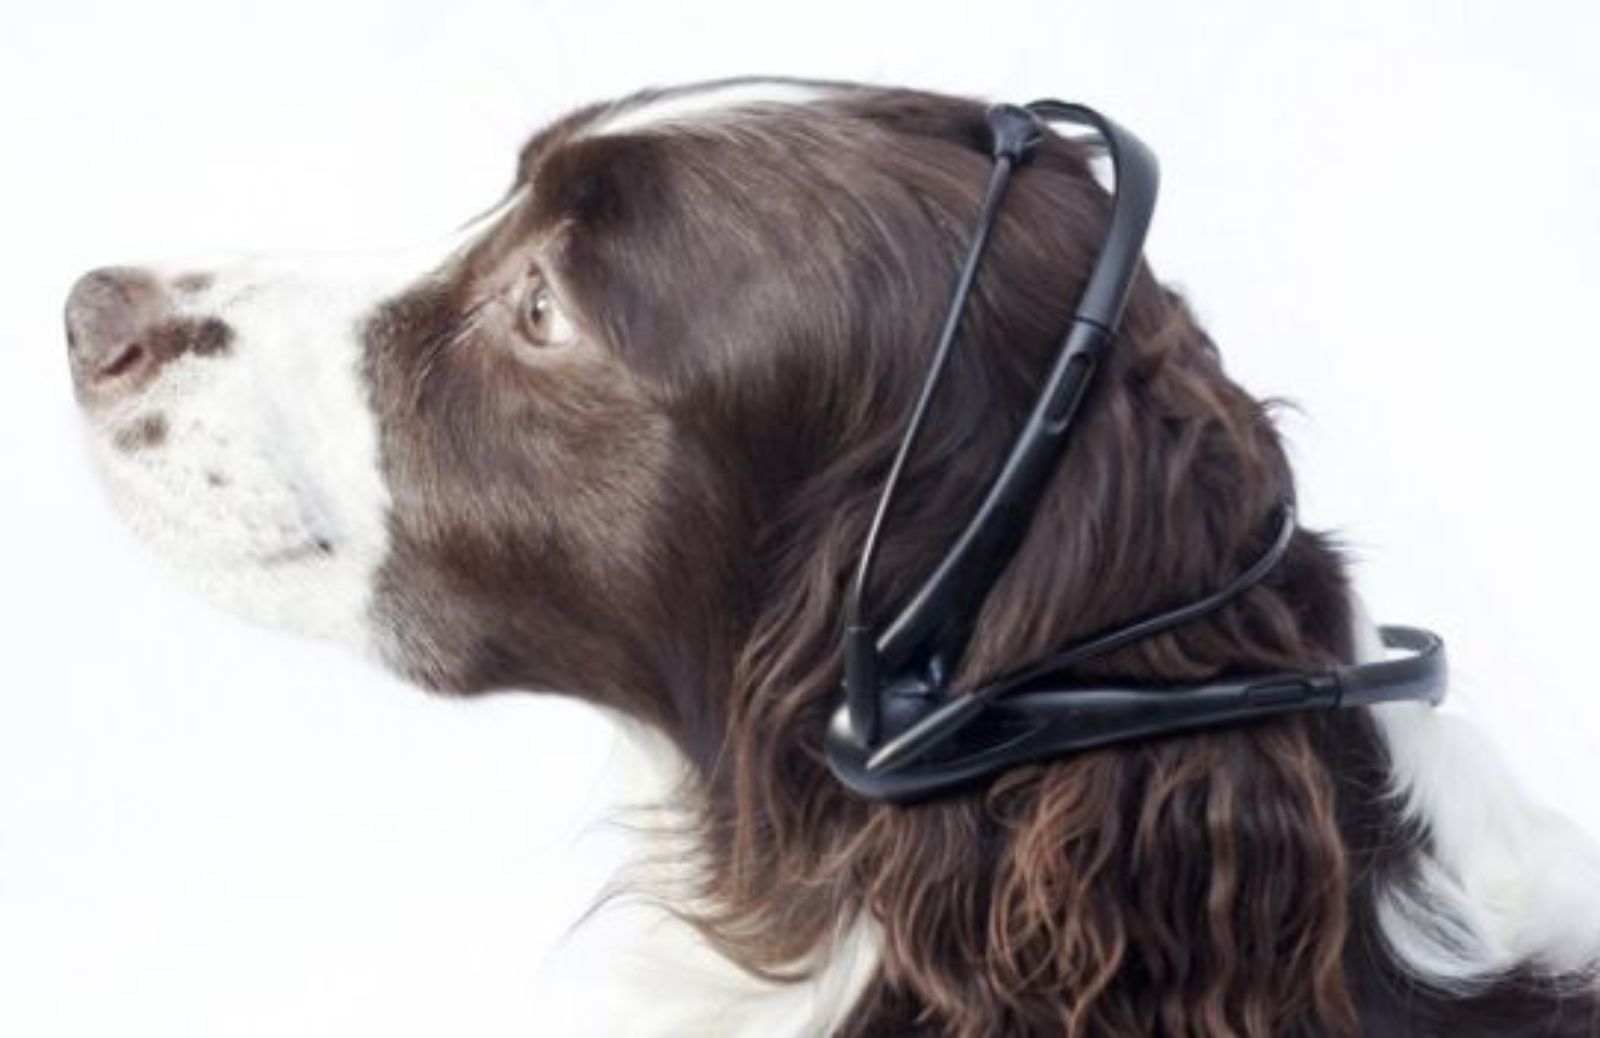 Cani che parlano: nuovo gadget promette di tradurre i loro pensieri